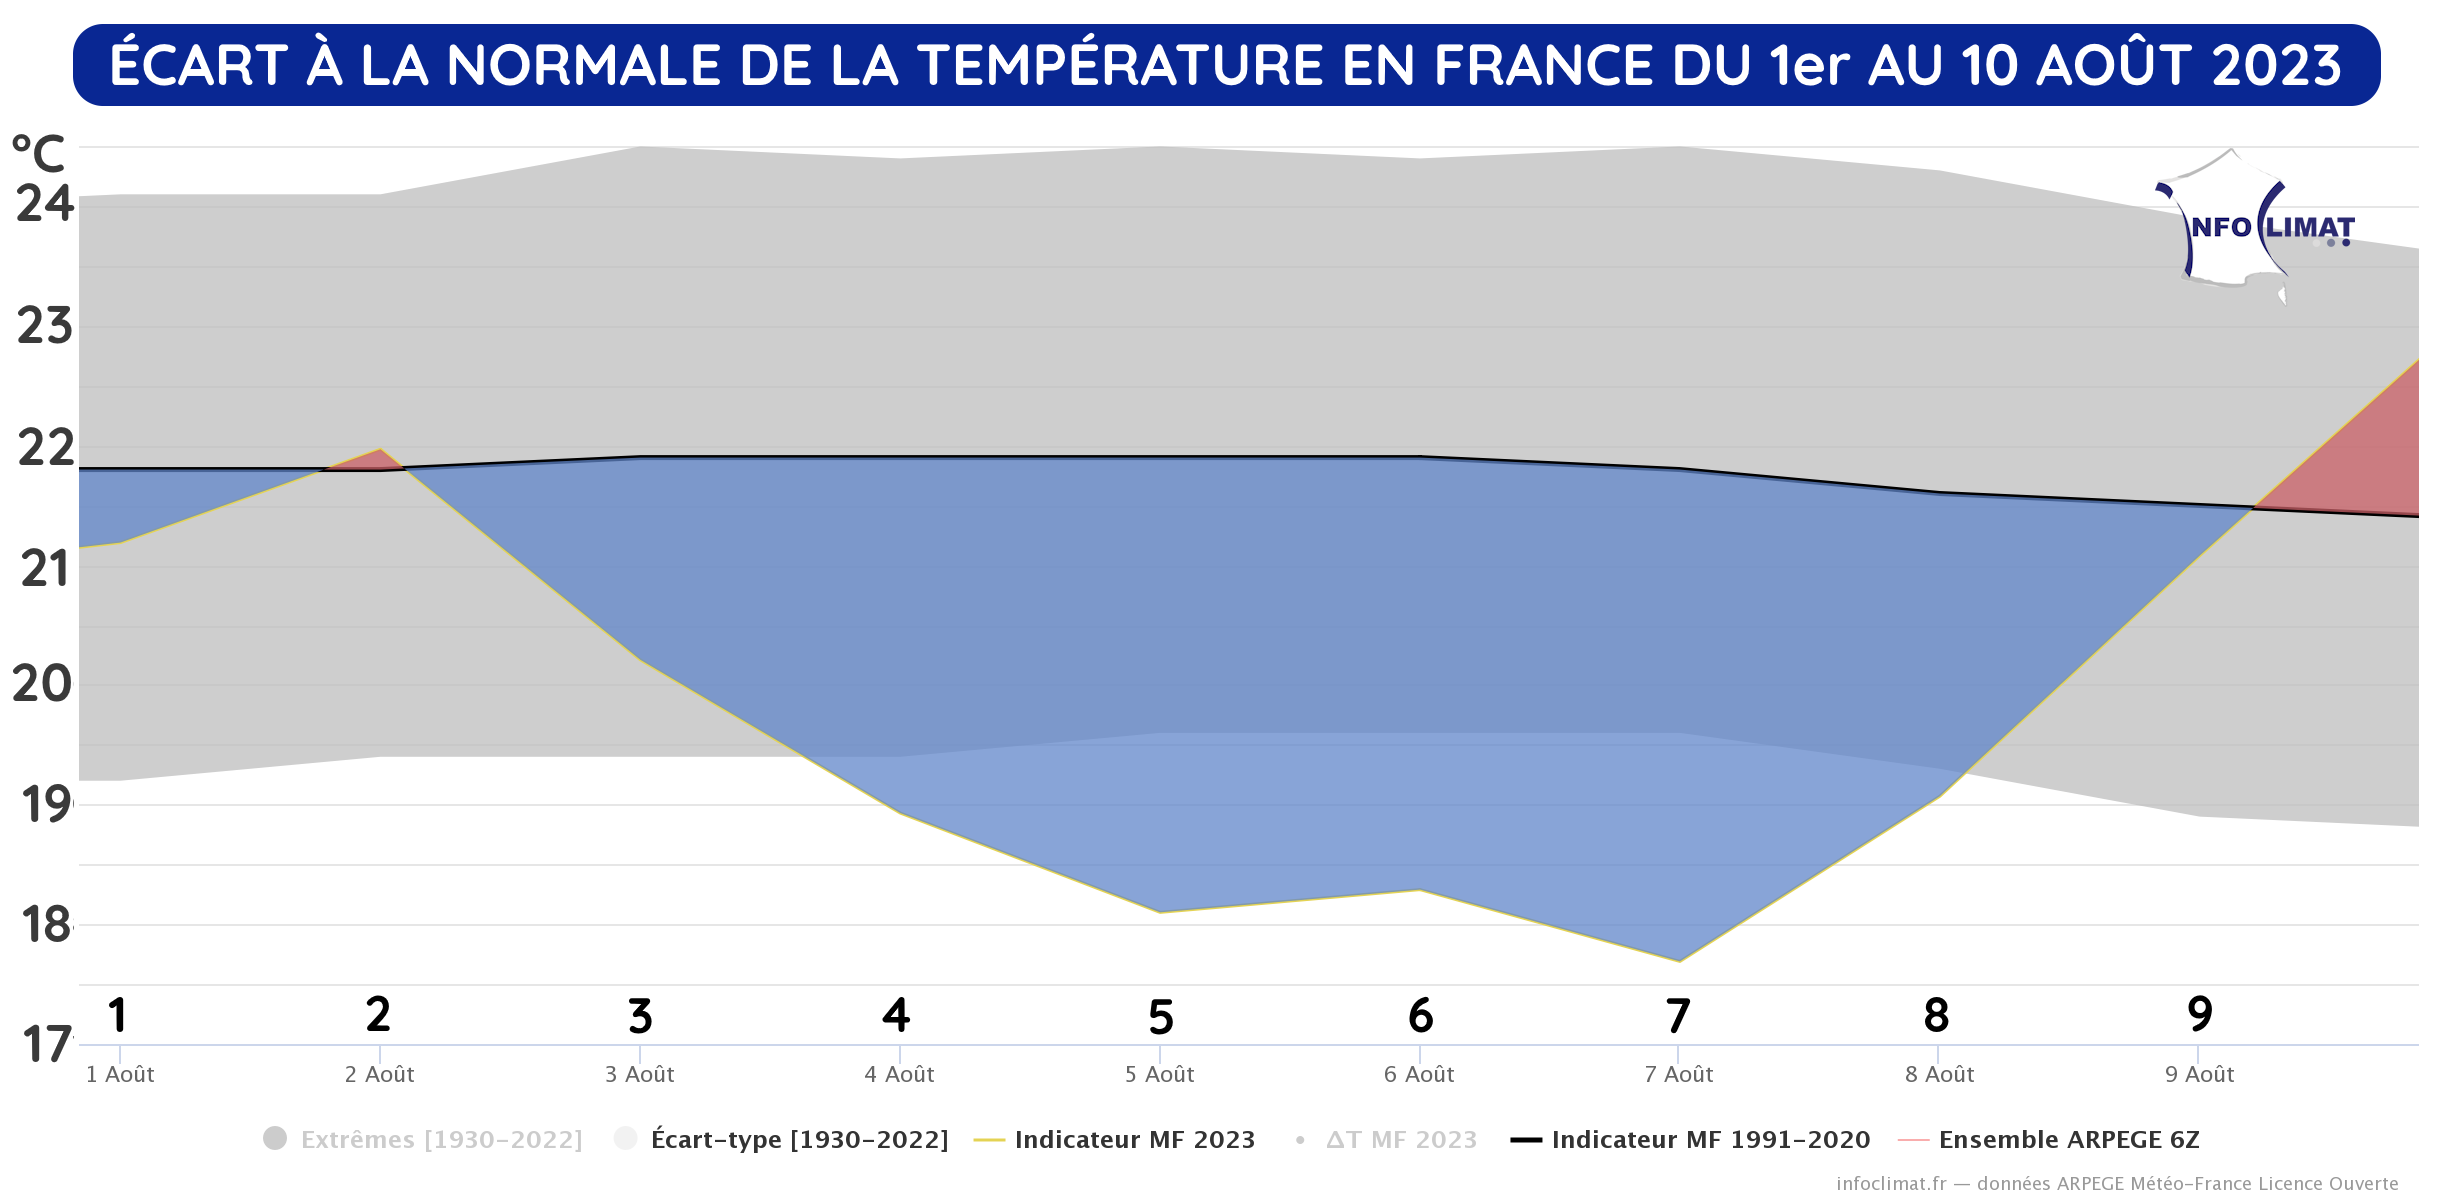 Écart à la normale des températures en France du 1er au 10 août 2023